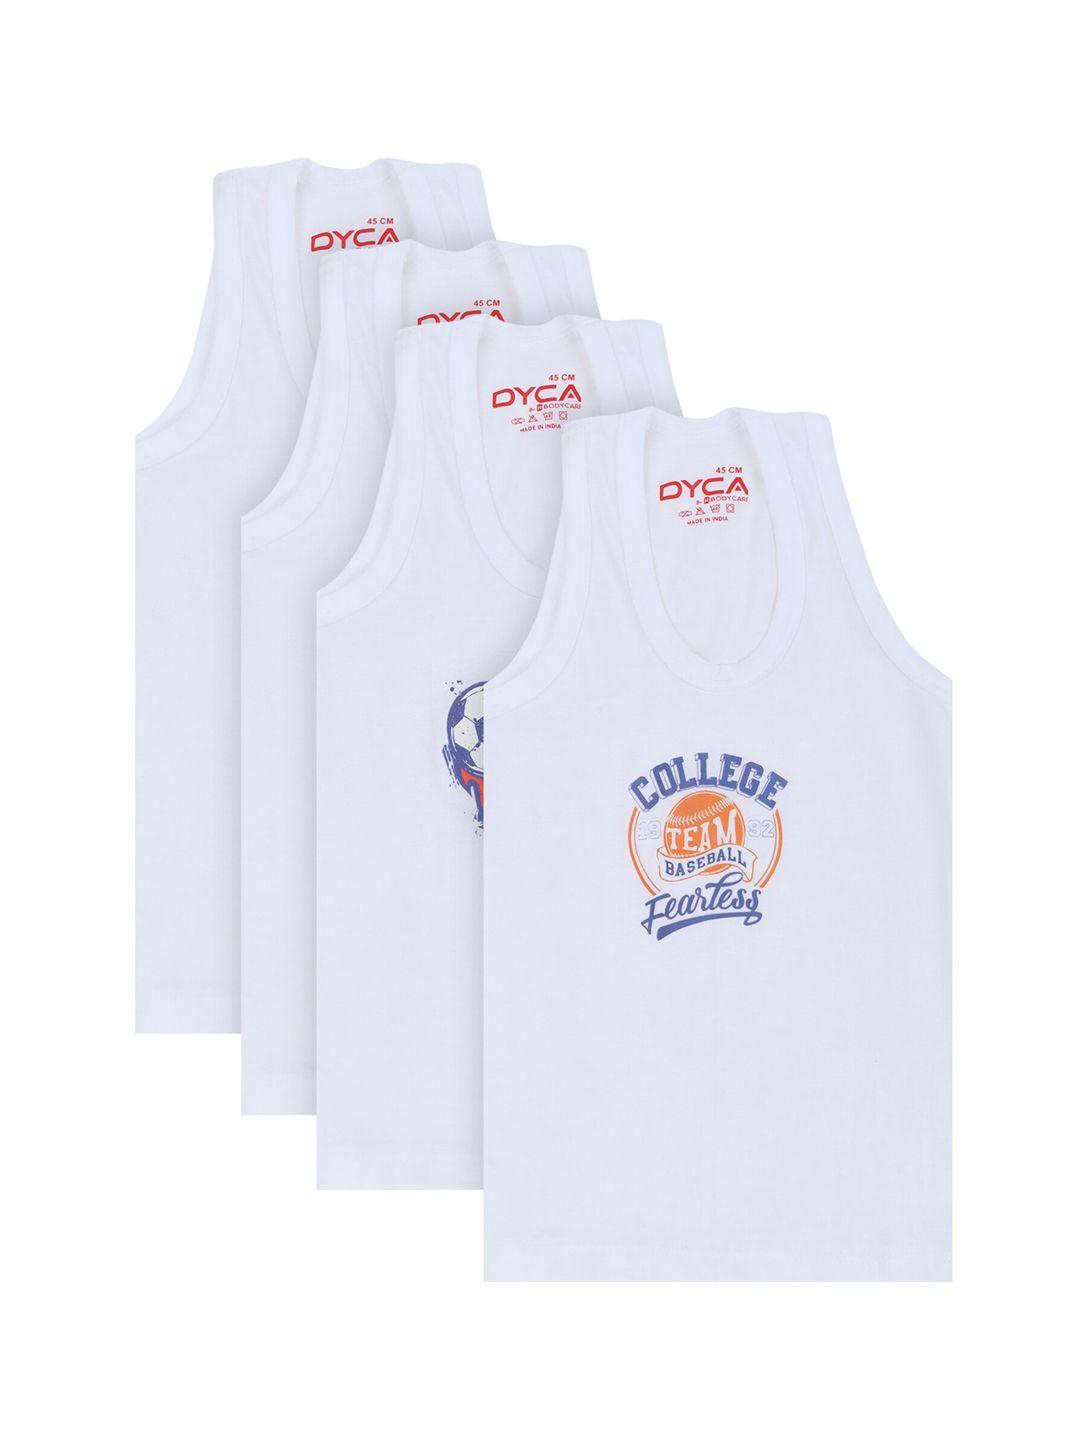 dyca kids-boys pack of 4 white printed innerwear vests